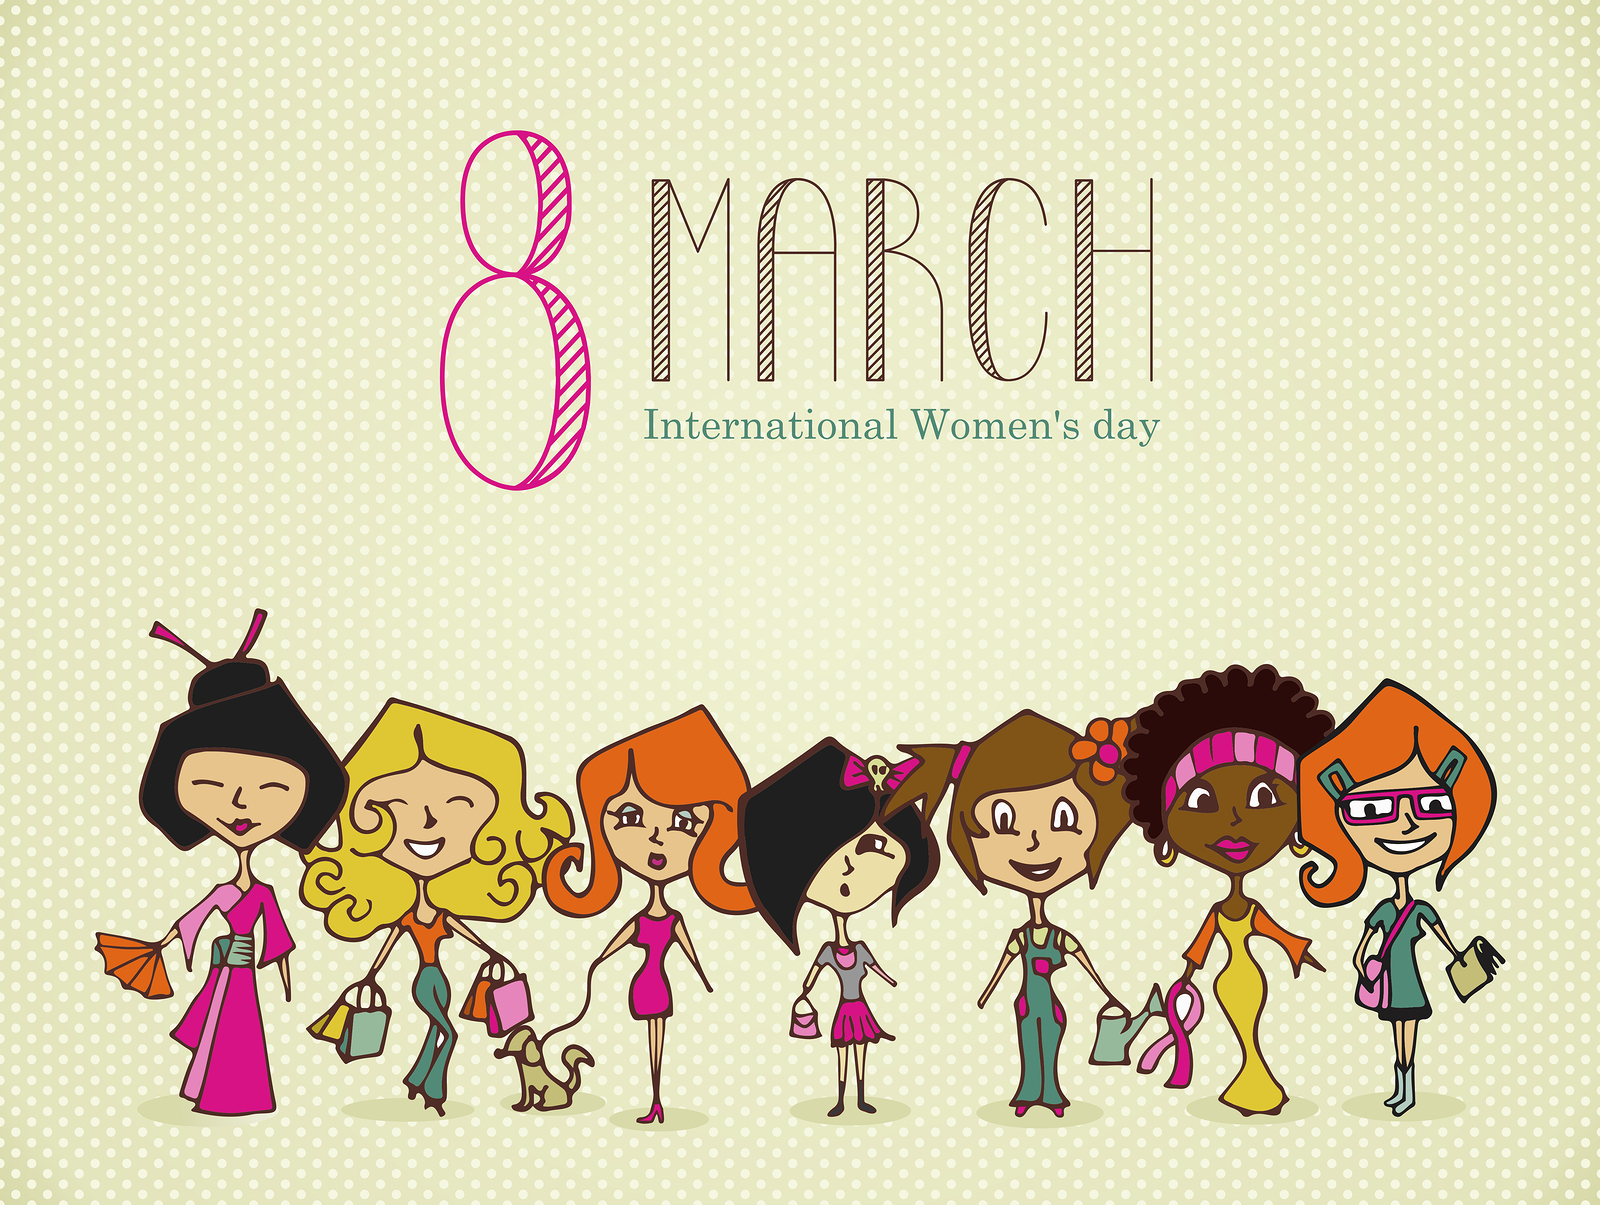 http://jkstalent.com/wp-content/uploads/2014/02/Women-Day-42659860.jpg